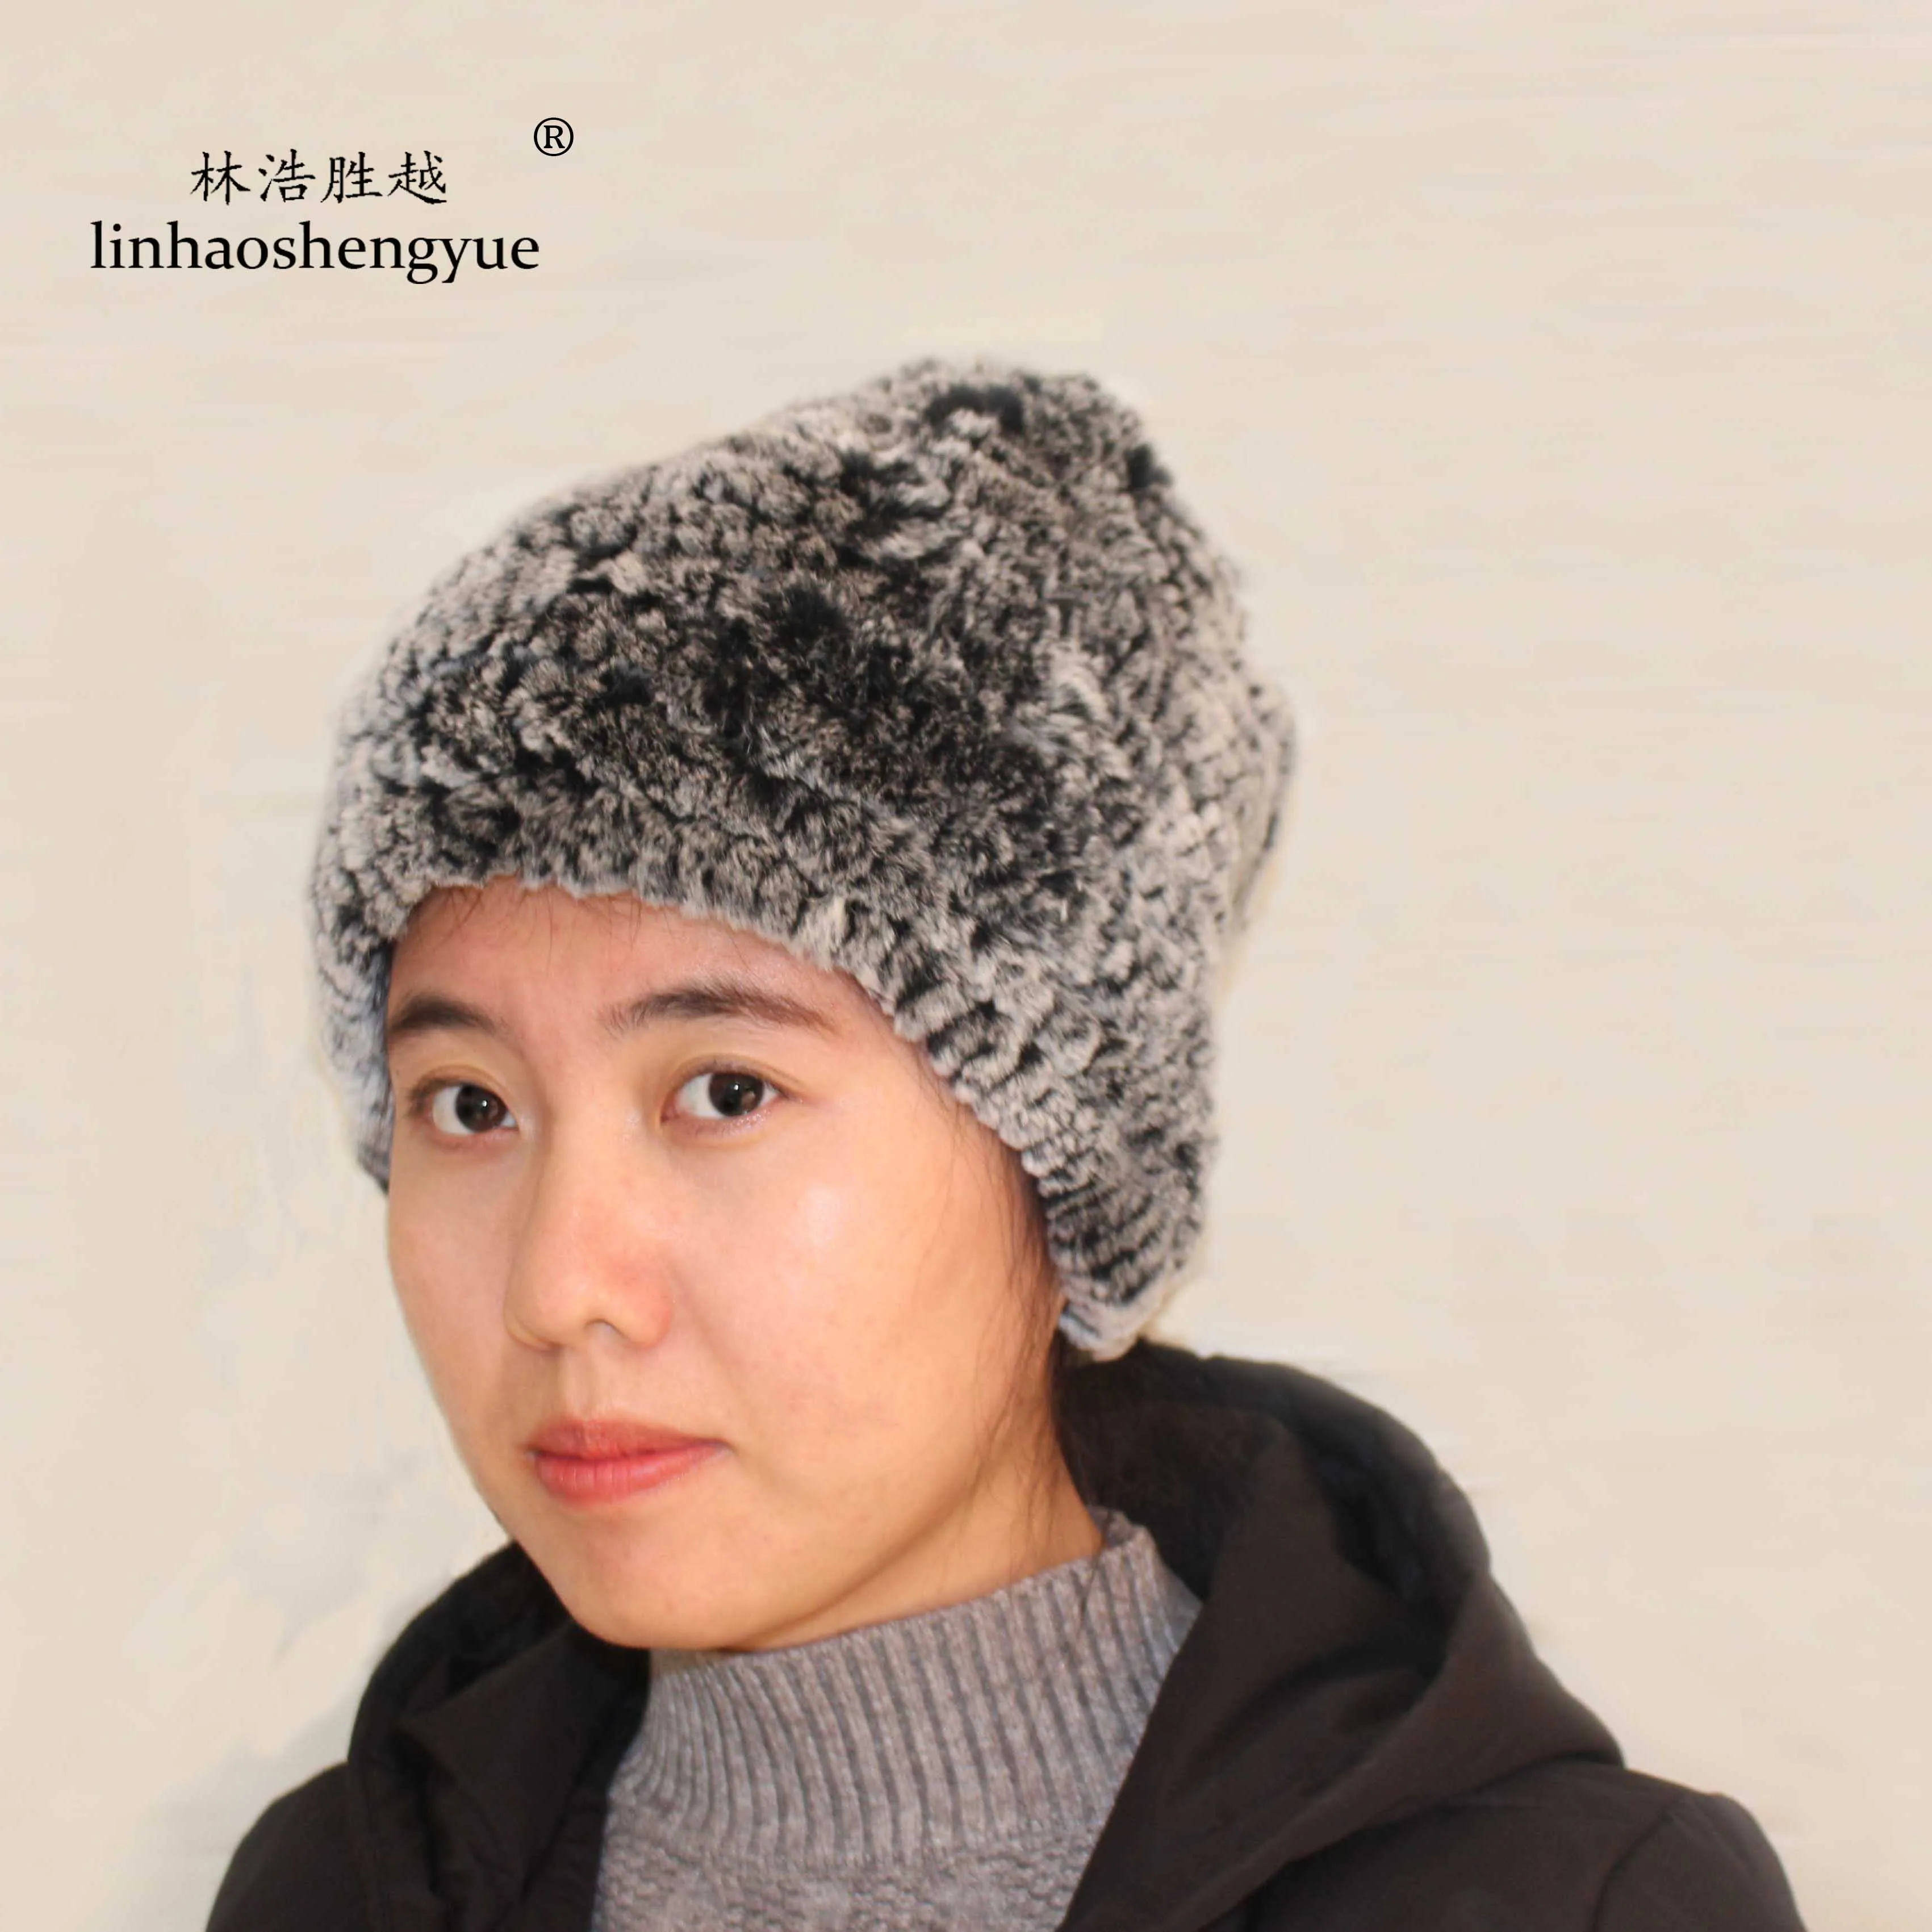 LinhaoshengyueFur hat, шапка из кроличьего меха, модная женская меховая шапка, Зимняя женская шапка, женская